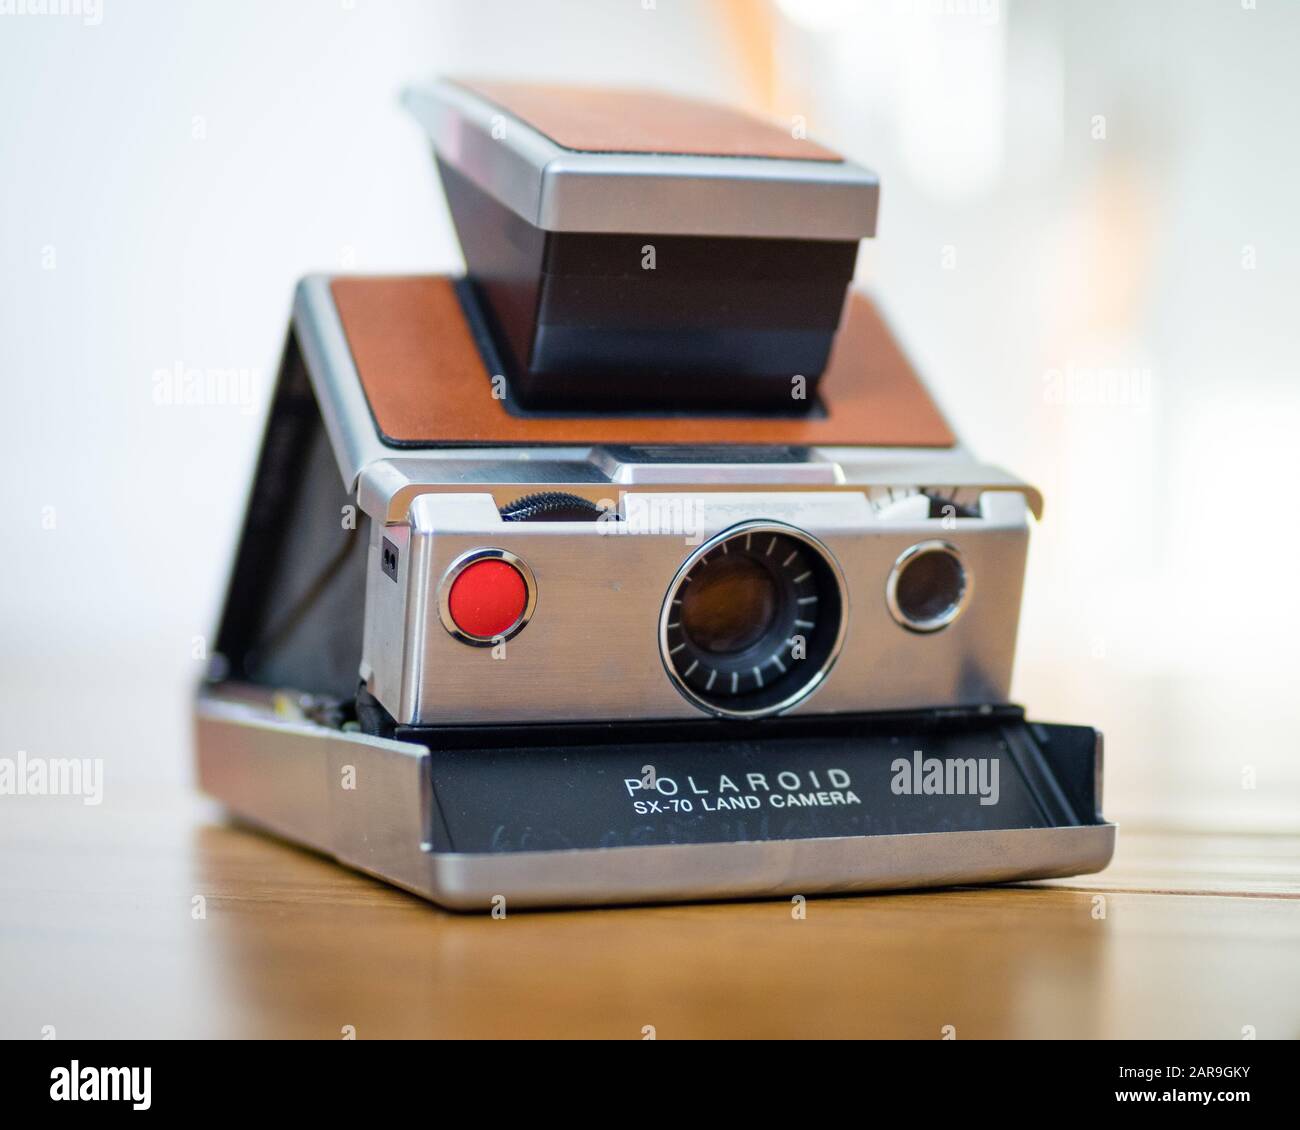 Eine originale Polaroid SX-70 Land Kamera, eine faltbare Spiegelreflexkamera,  die 1972 erstmals von der Polaroid Corporation produziert wurde  Stockfotografie - Alamy